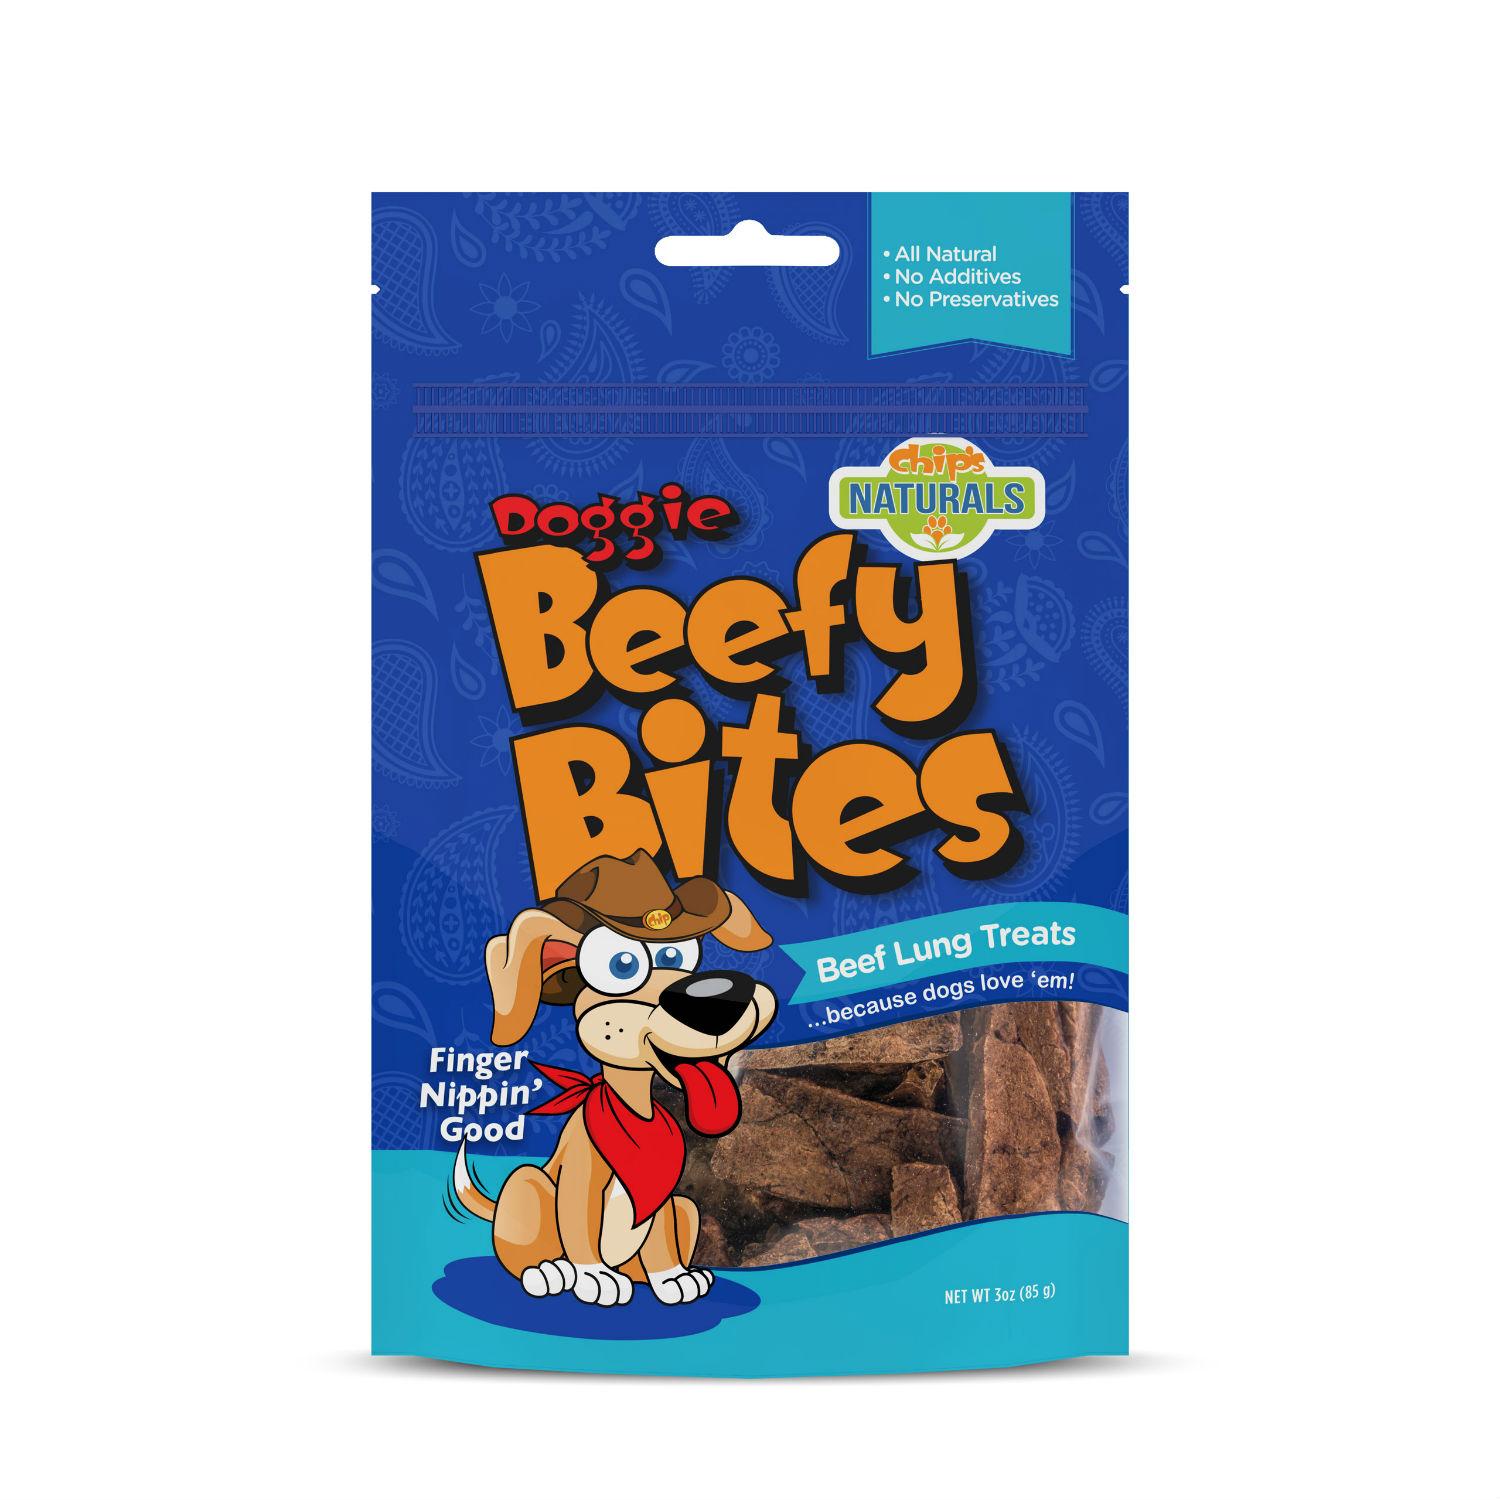 Chip's Naturals Doggie Beefy Bites Dog Treat